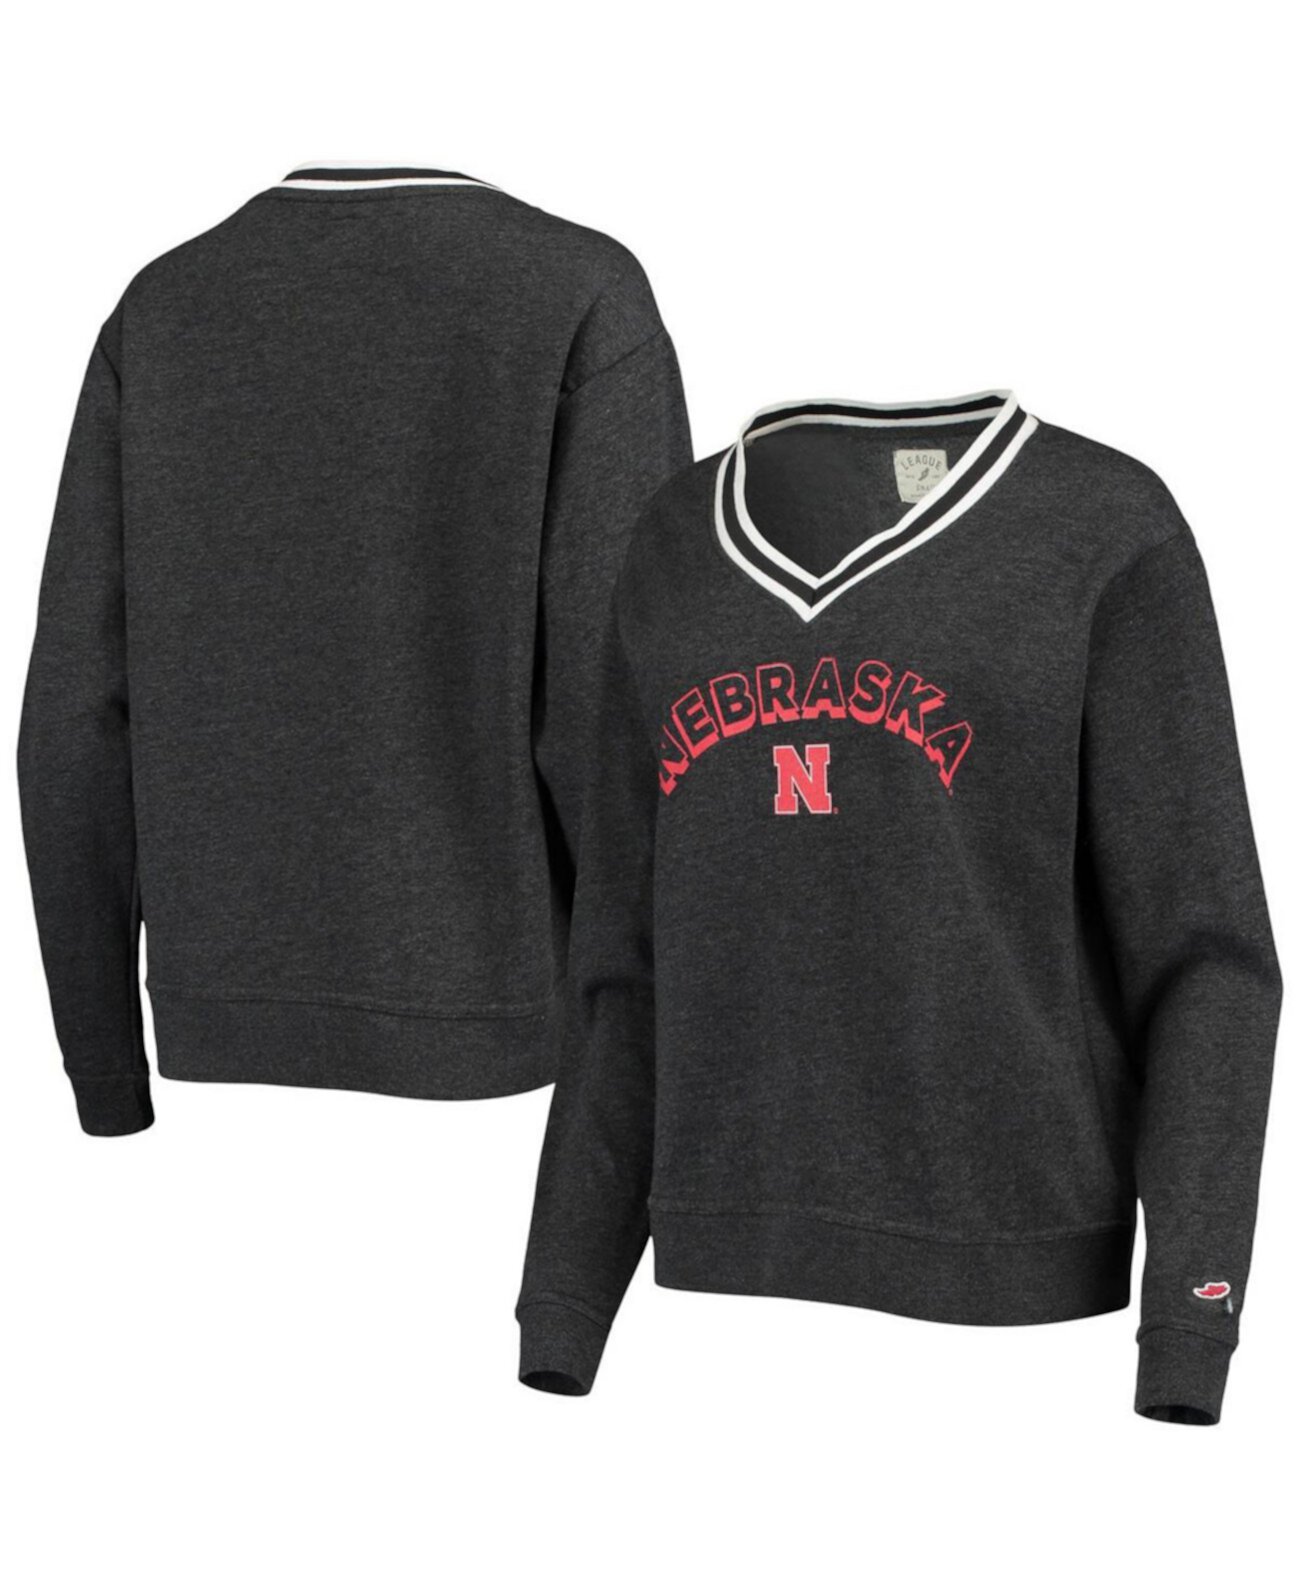 Женский черный пуловер с треугольным вырезом Nebraska Huskers Victory Springs Tri-Blend, толстовка с v-образным вырезом League Collegiate Wear